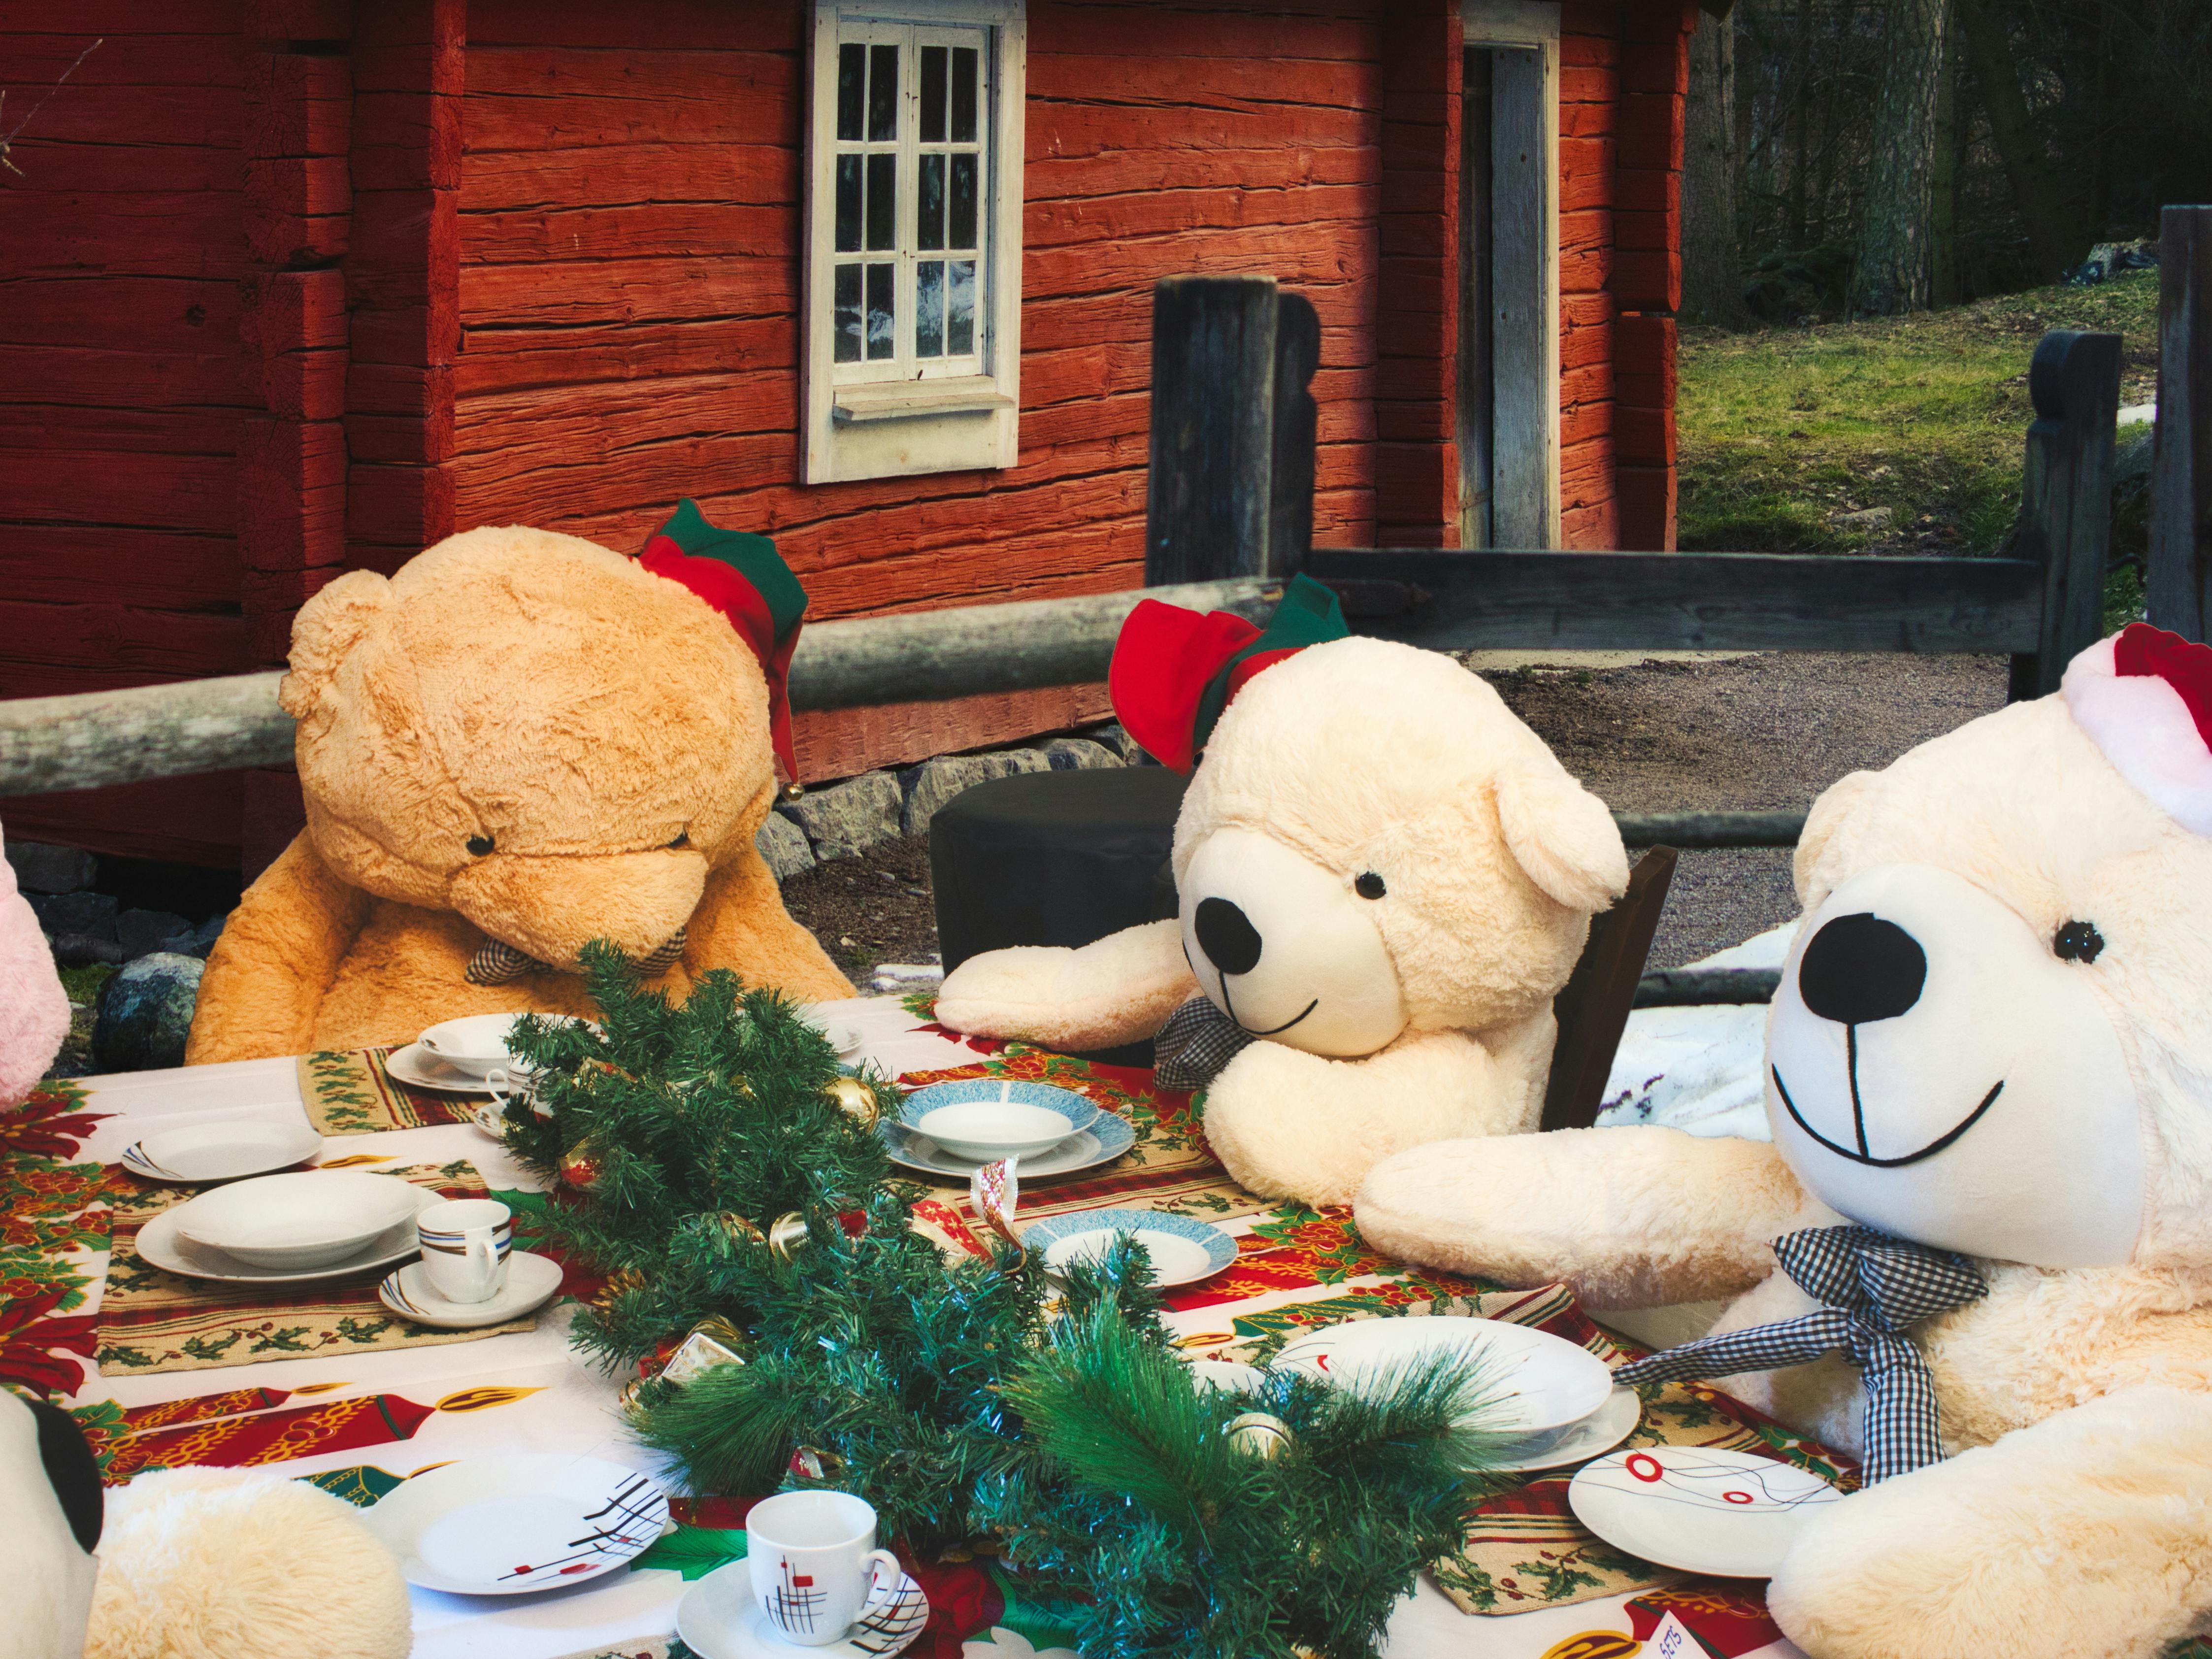 Fire bamser sidder omkring et flot dækket julebord